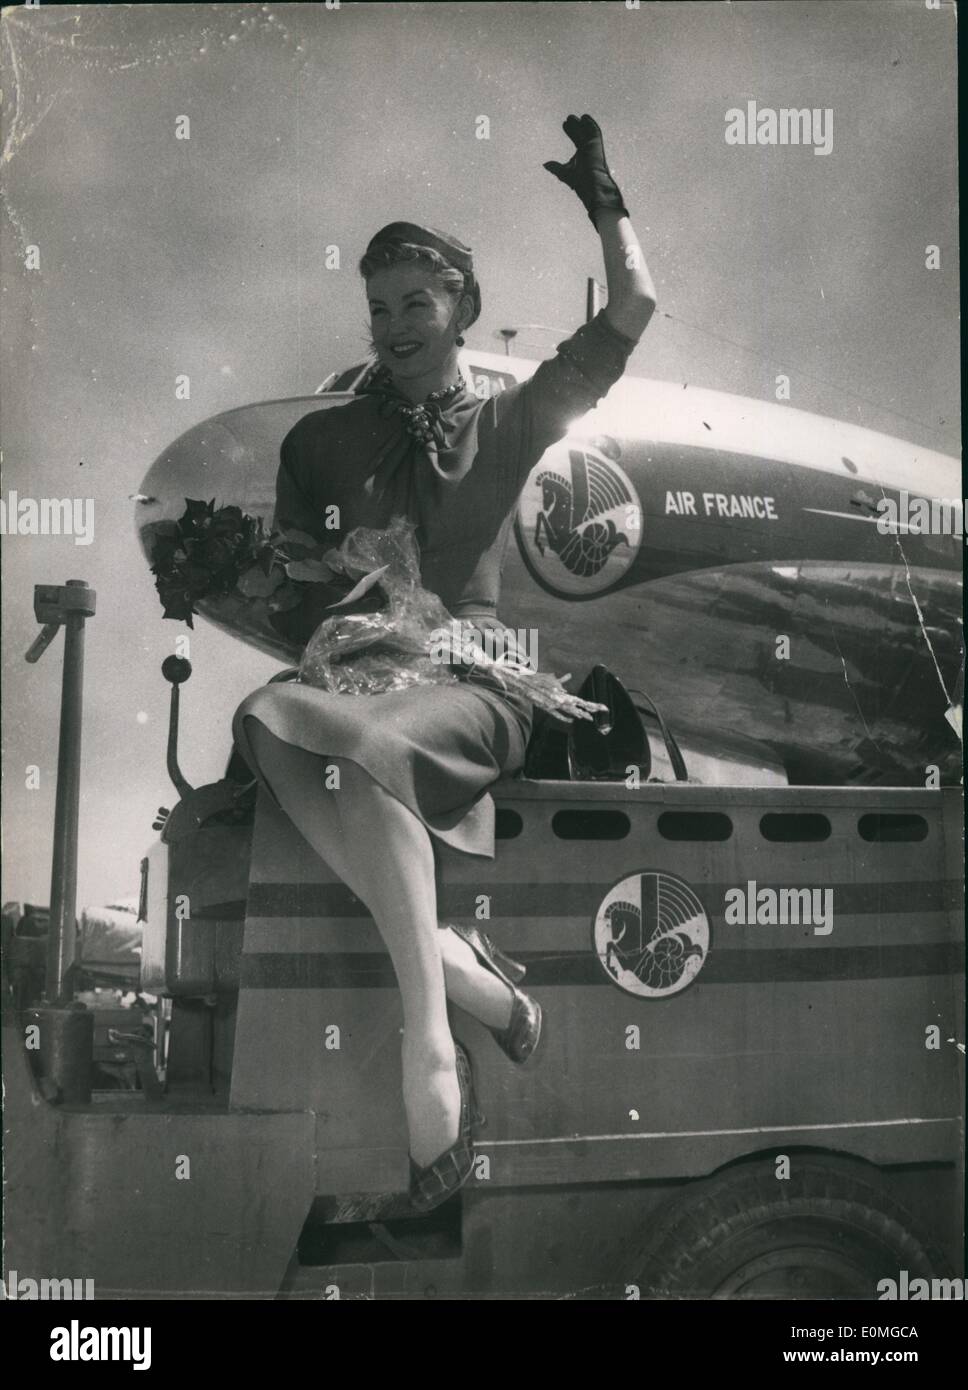 Apr. 04, 1955 - En Route al festival di Cannes ; famoso schermo americano star Esther Williams su arrivo all aeroporto di Orly aeroporto En Route al Festival di Cannes. Foto Stock